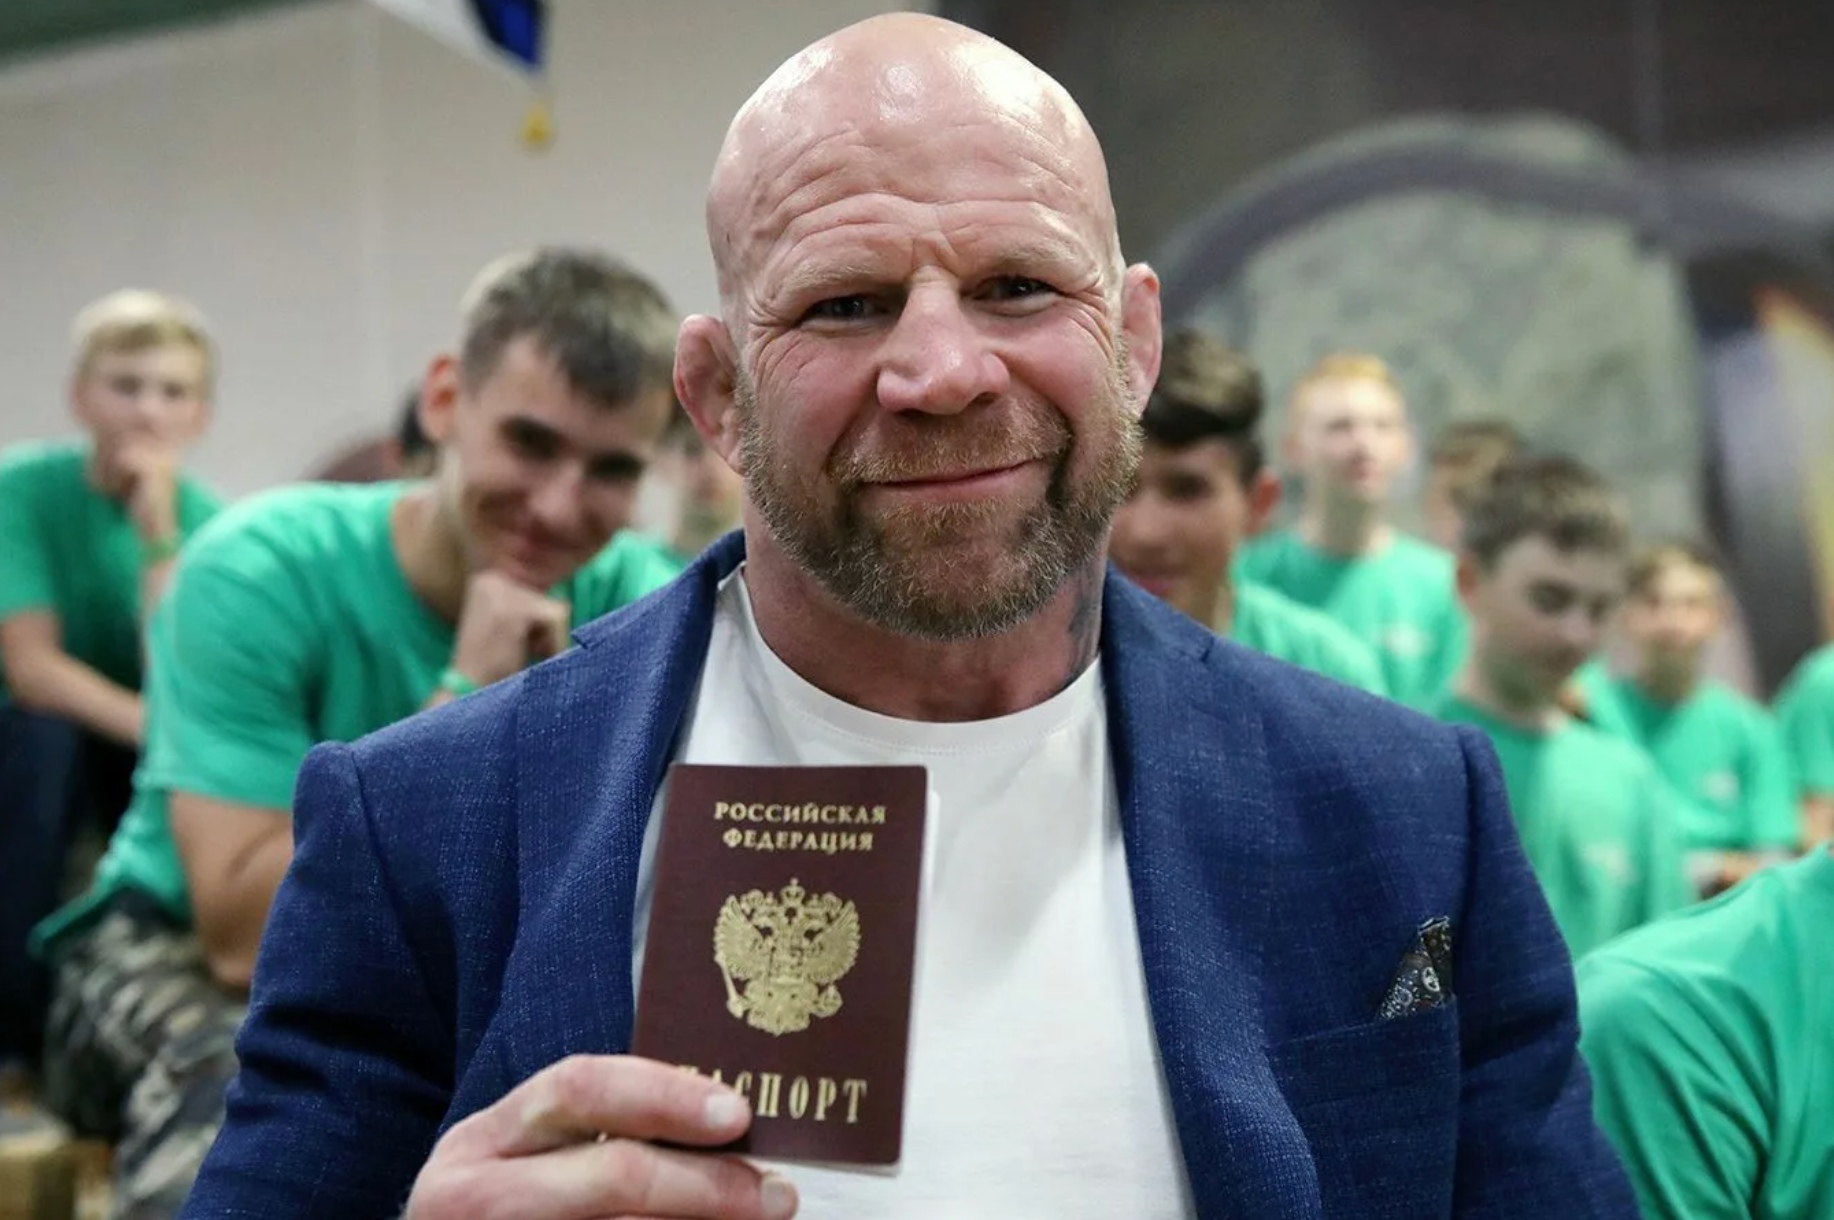 Джефф Монсон с российским паспортом